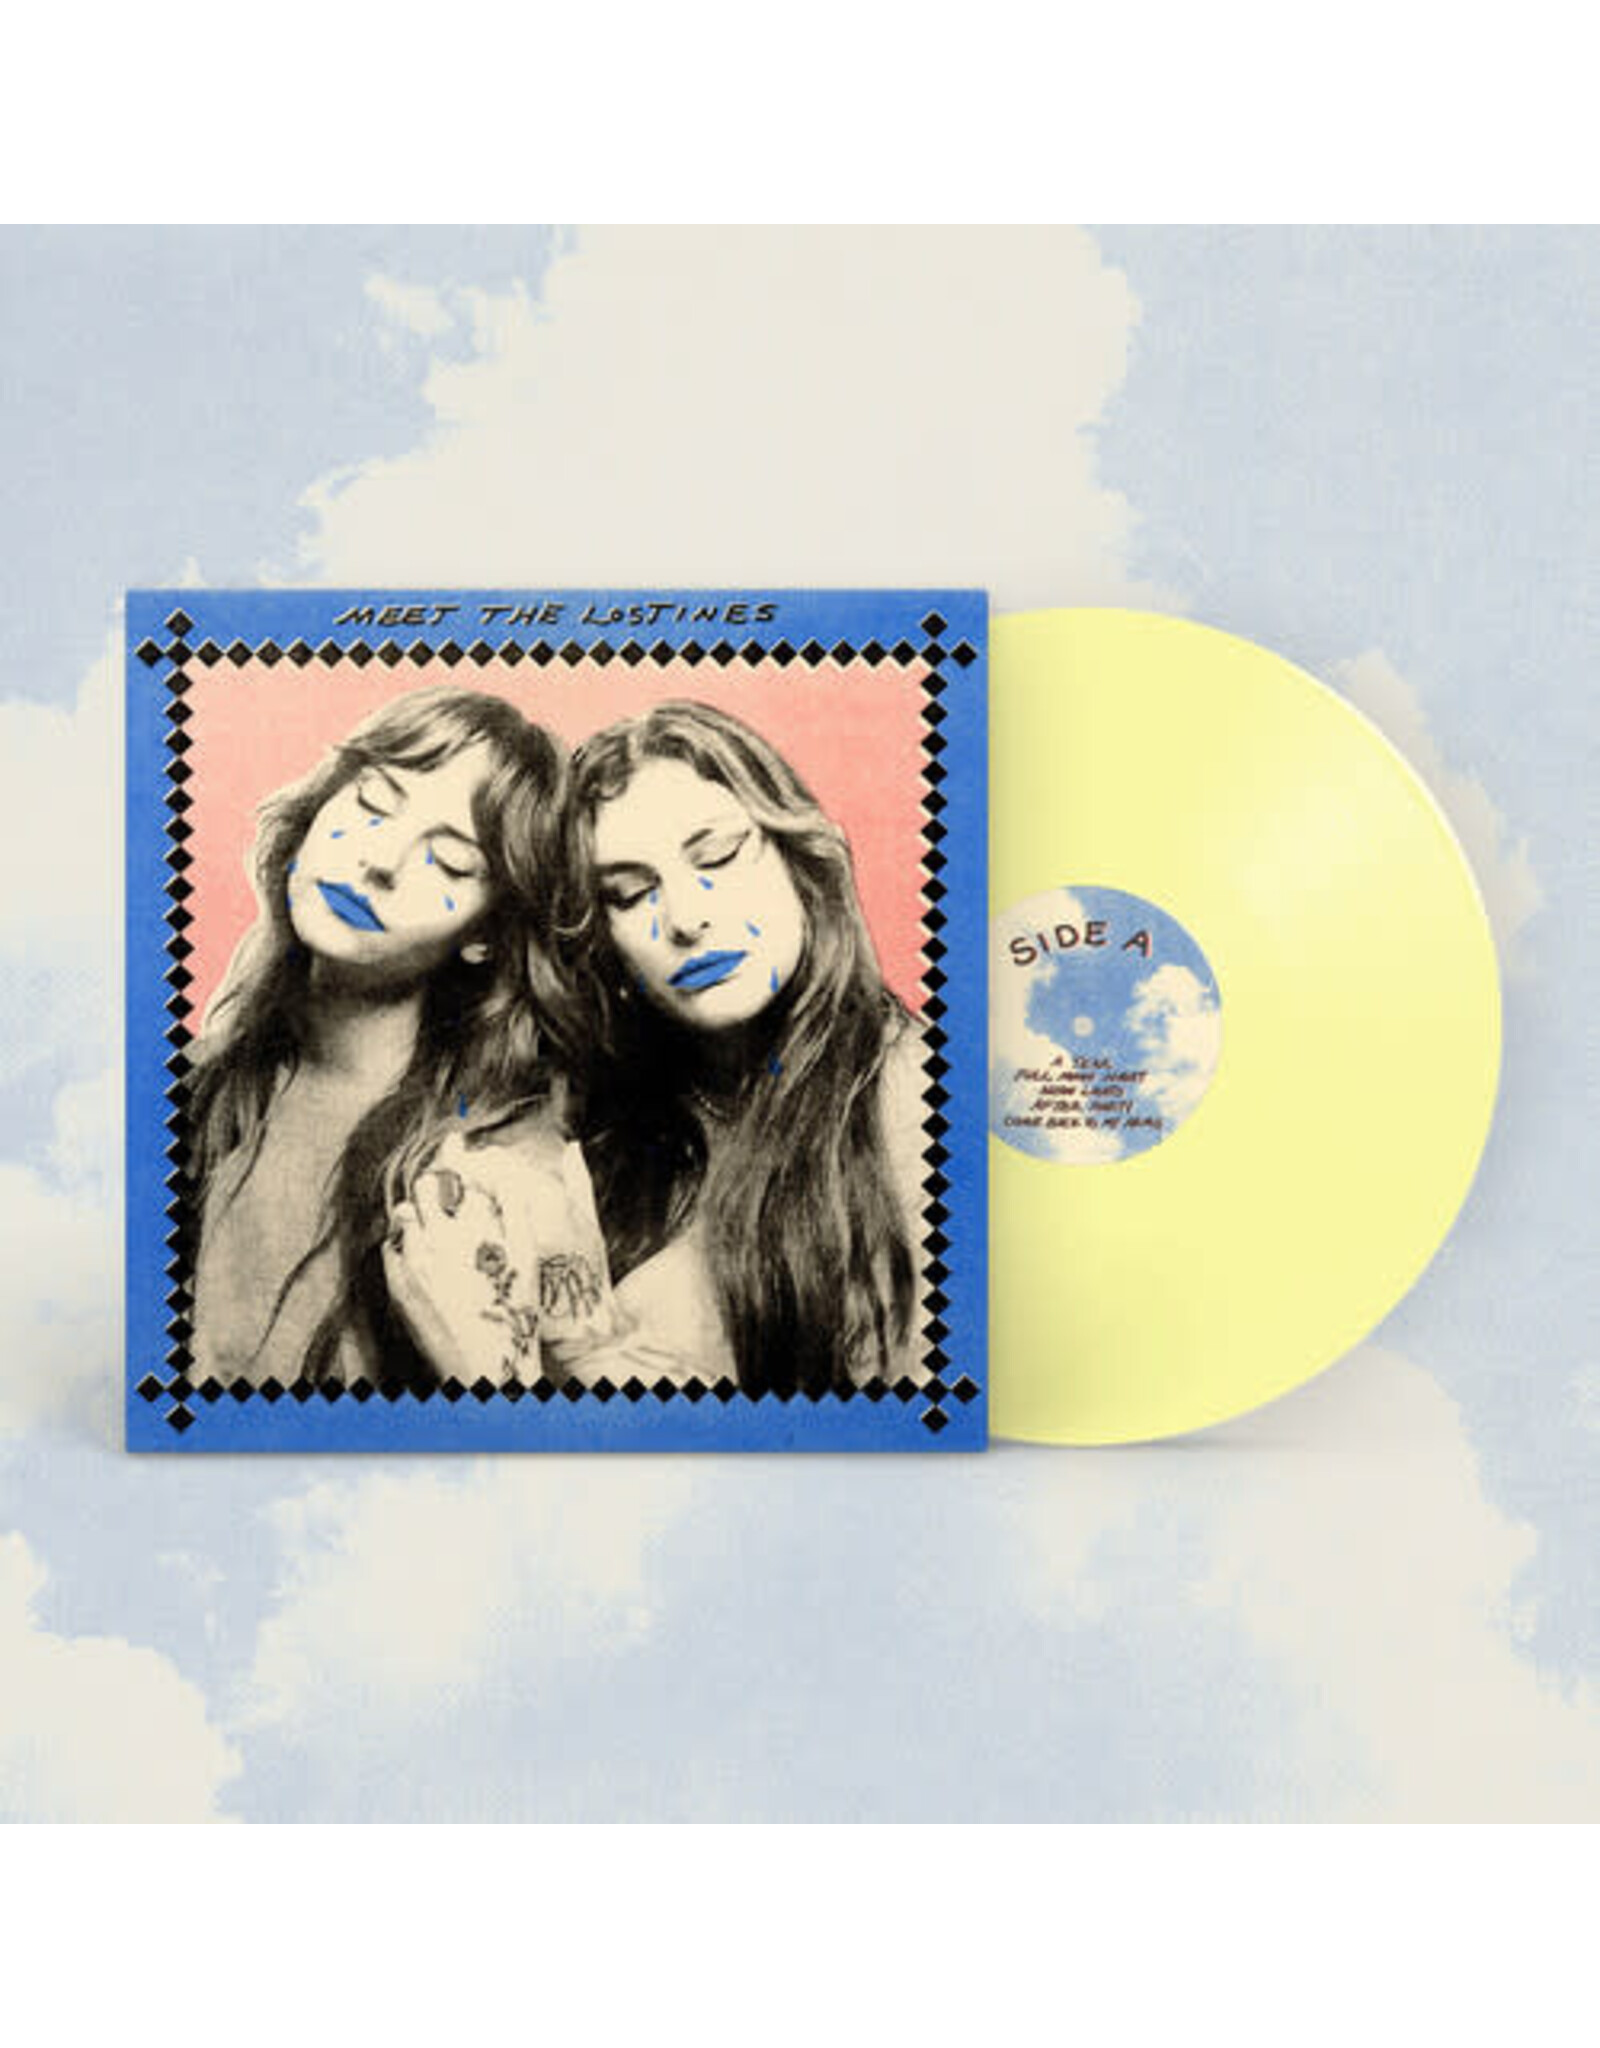 Lostines / Meet The Lostines (yellow vinyl)